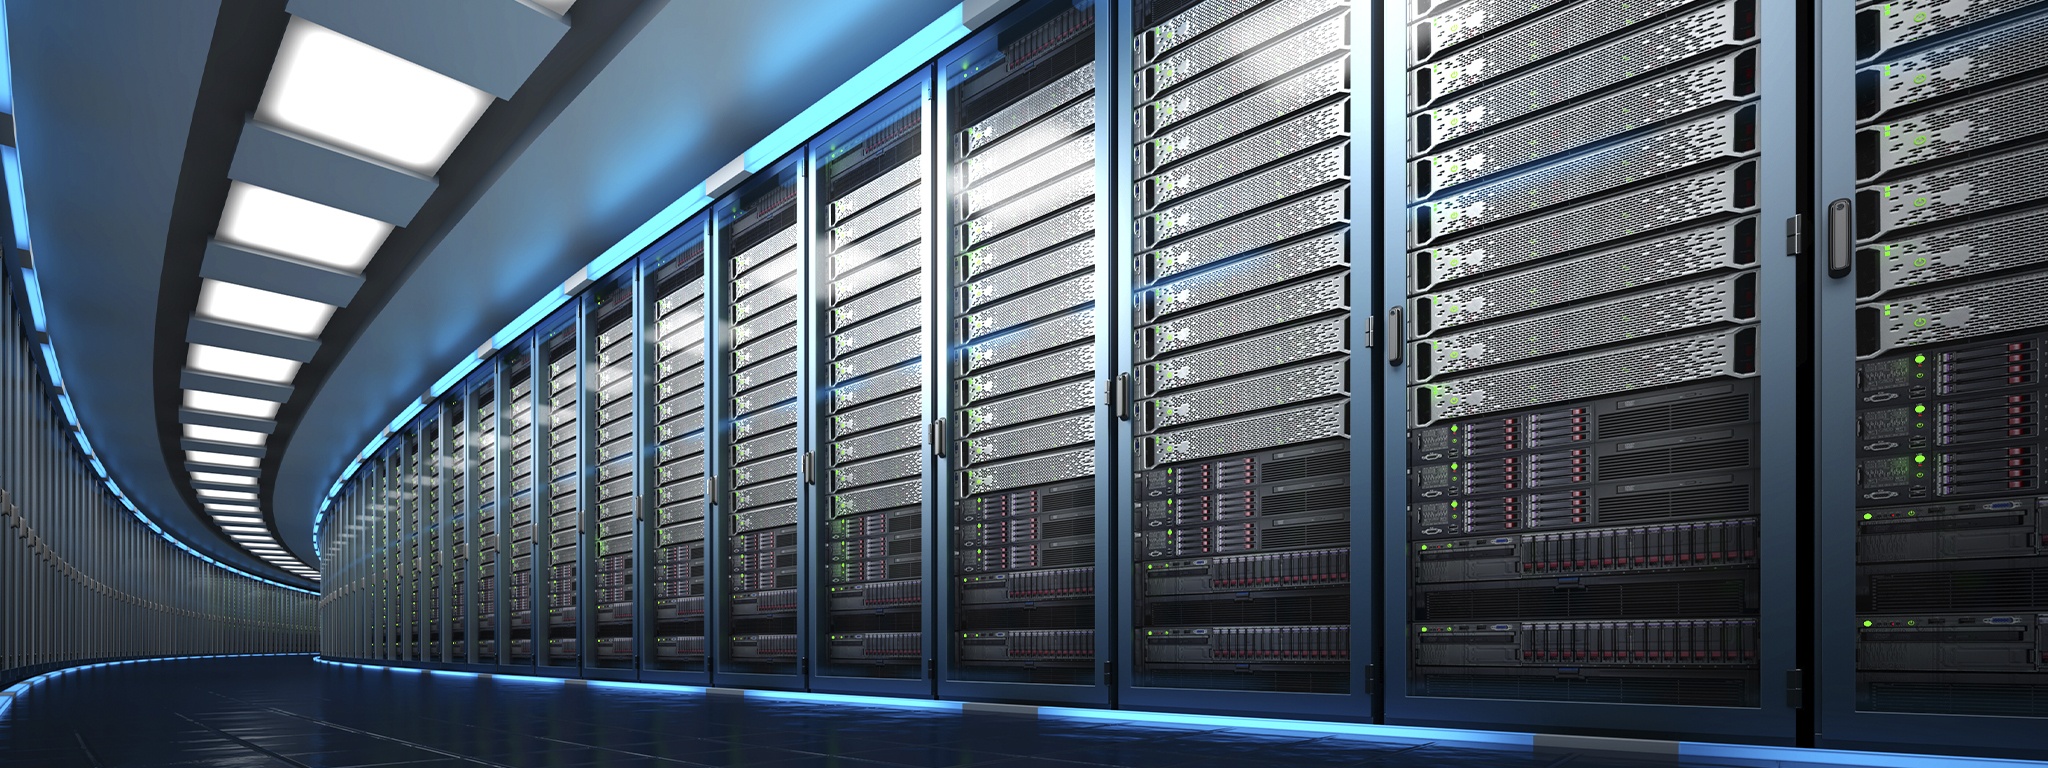 資料中心的 3D 渲染圖顯示一個大伺服器機房與一長列伺服器機架組合